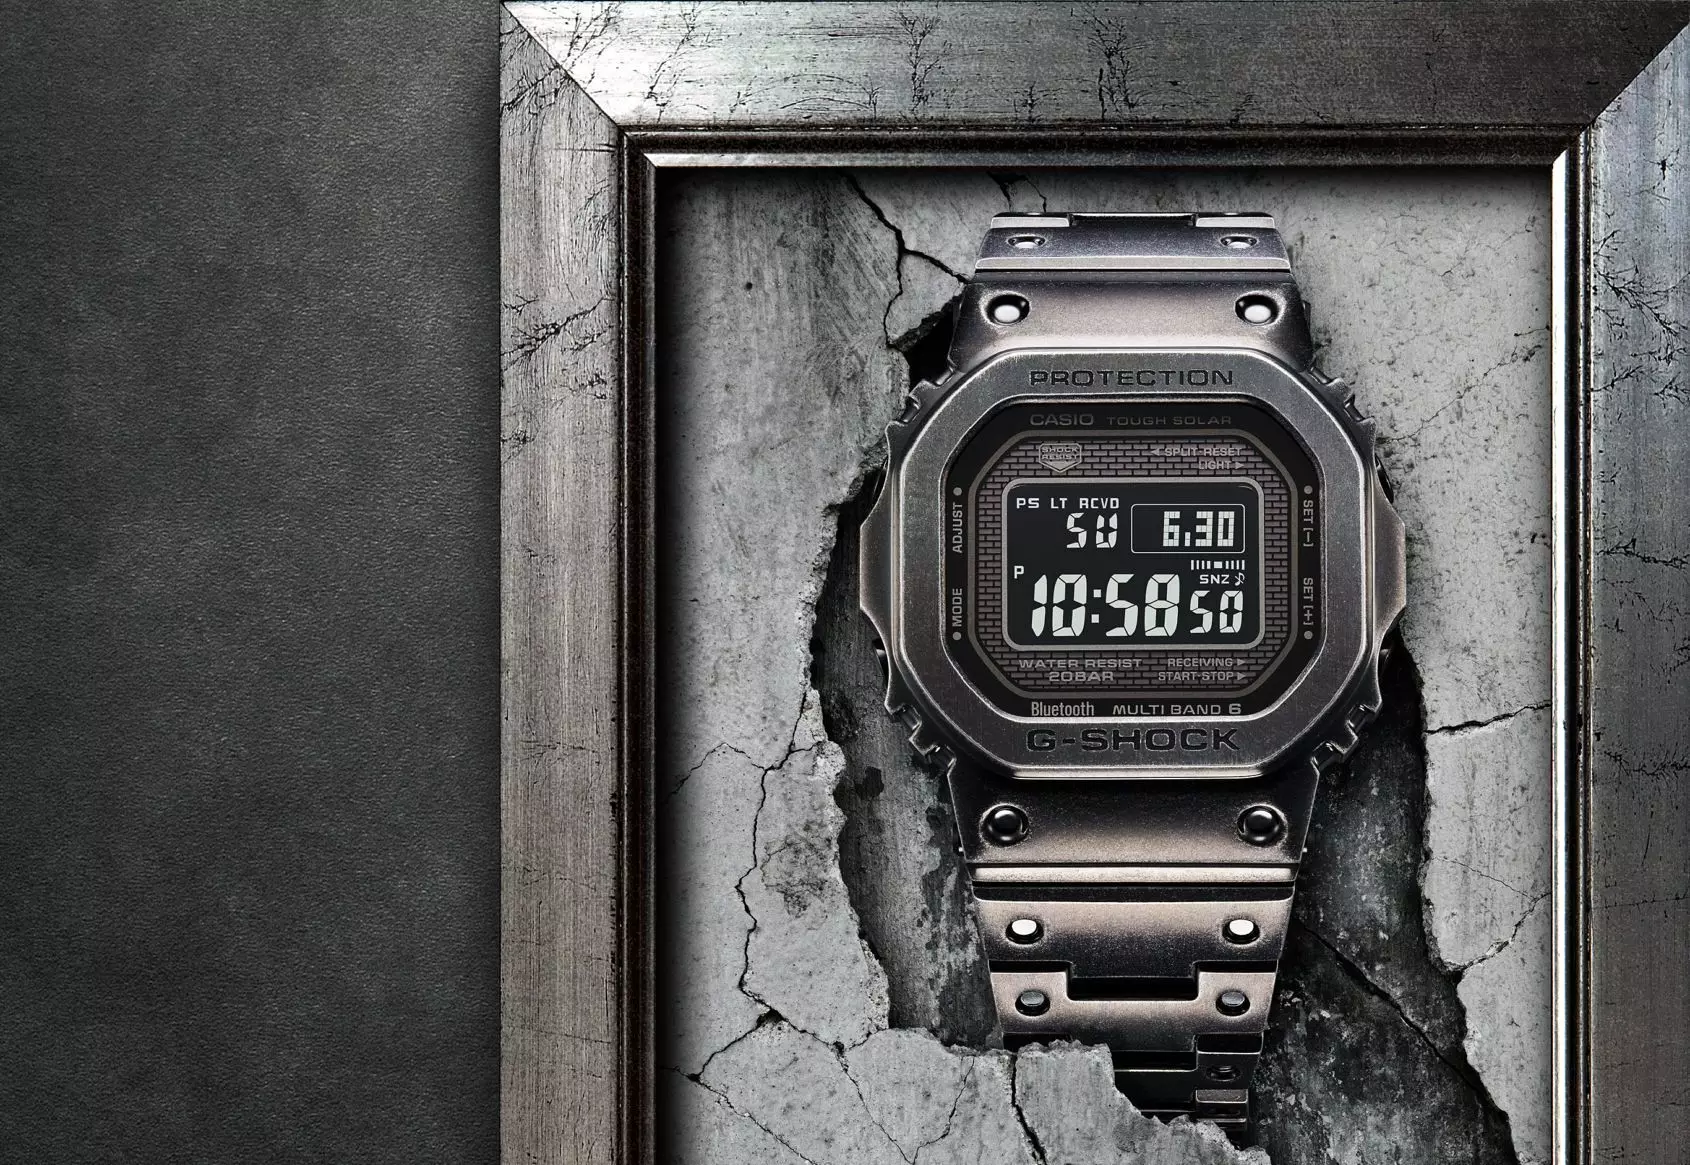 როგორ უძღვება G-Shock პაკეტს საწყისი დონის კოლექციონირებაში